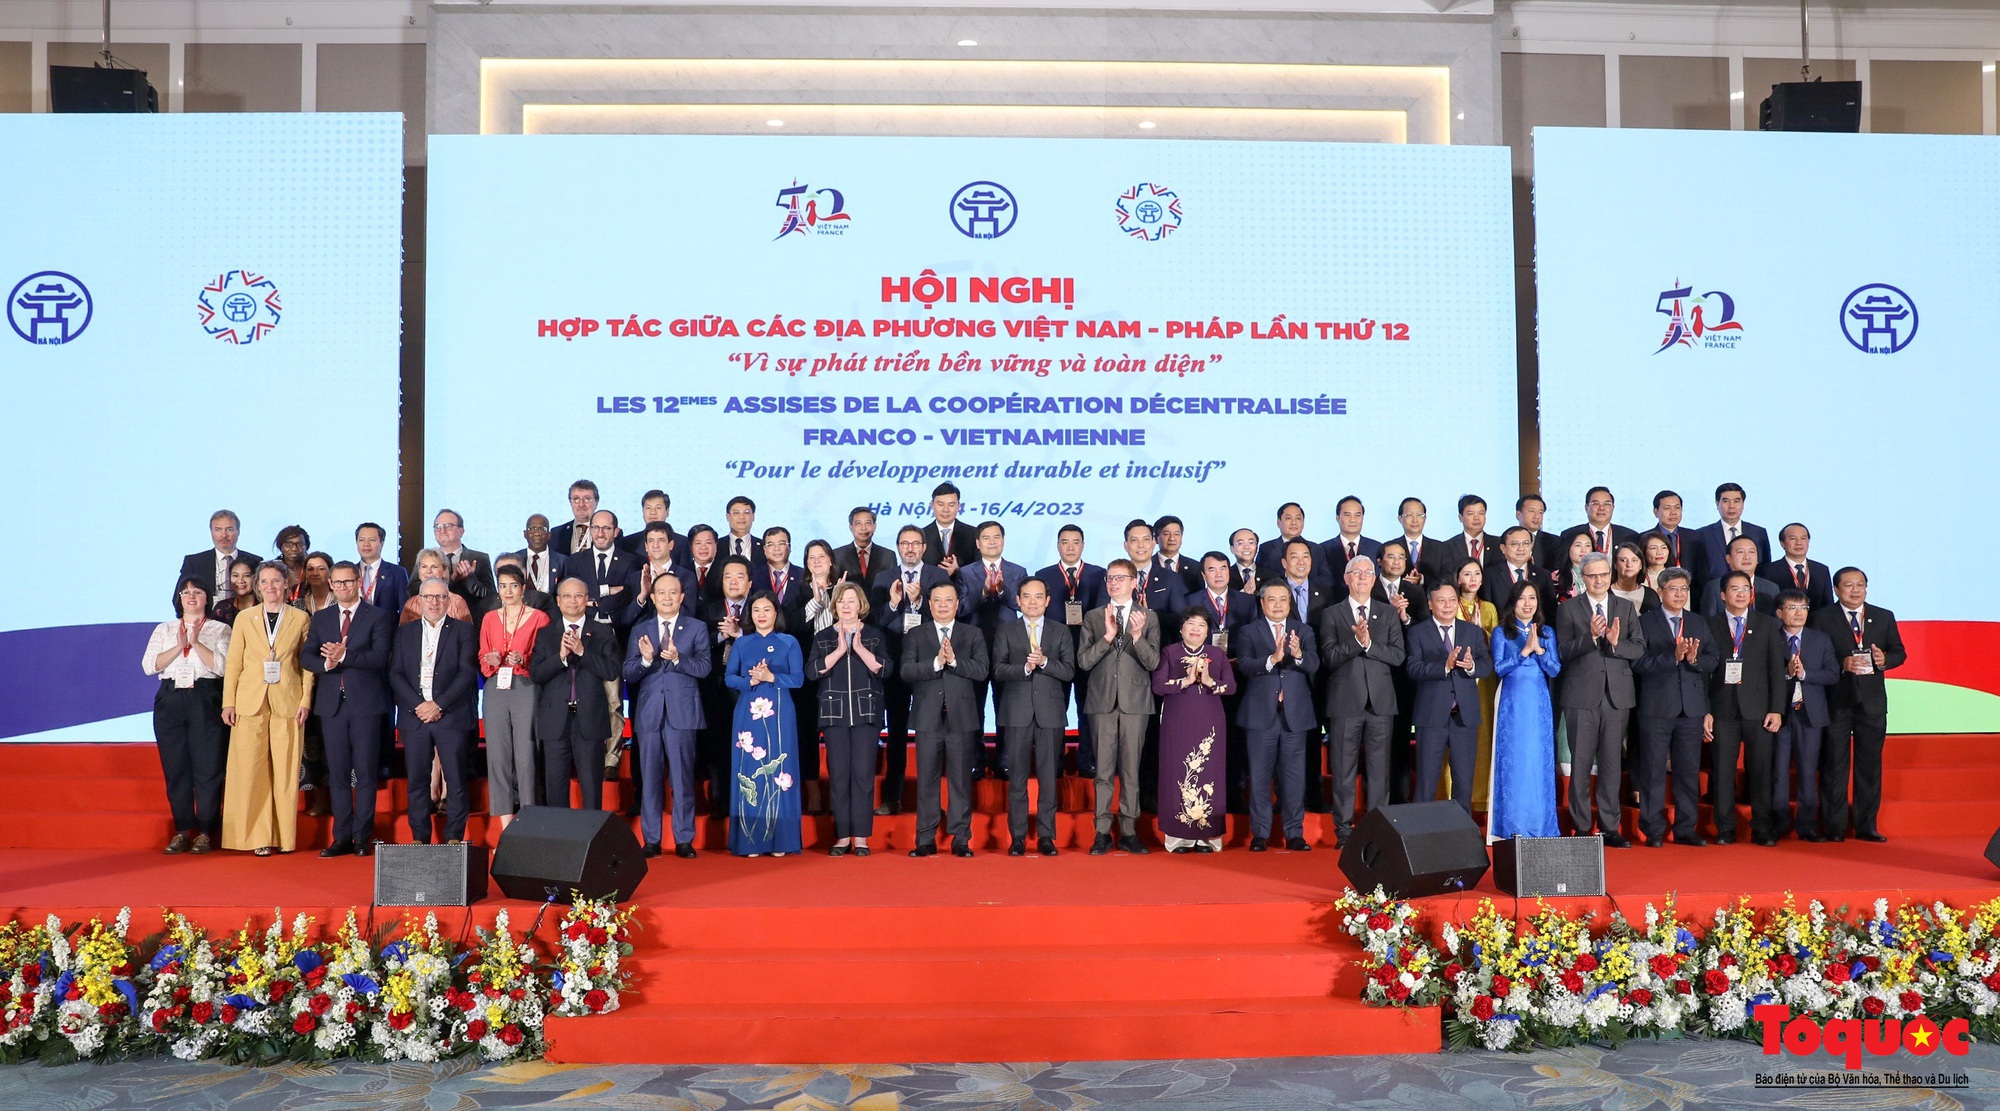 Chùm ảnh: Khai mạc Hội nghị hợp tác giữa các địa phương Việt Nam và Pháp lần thứ 12 - Ảnh 17.